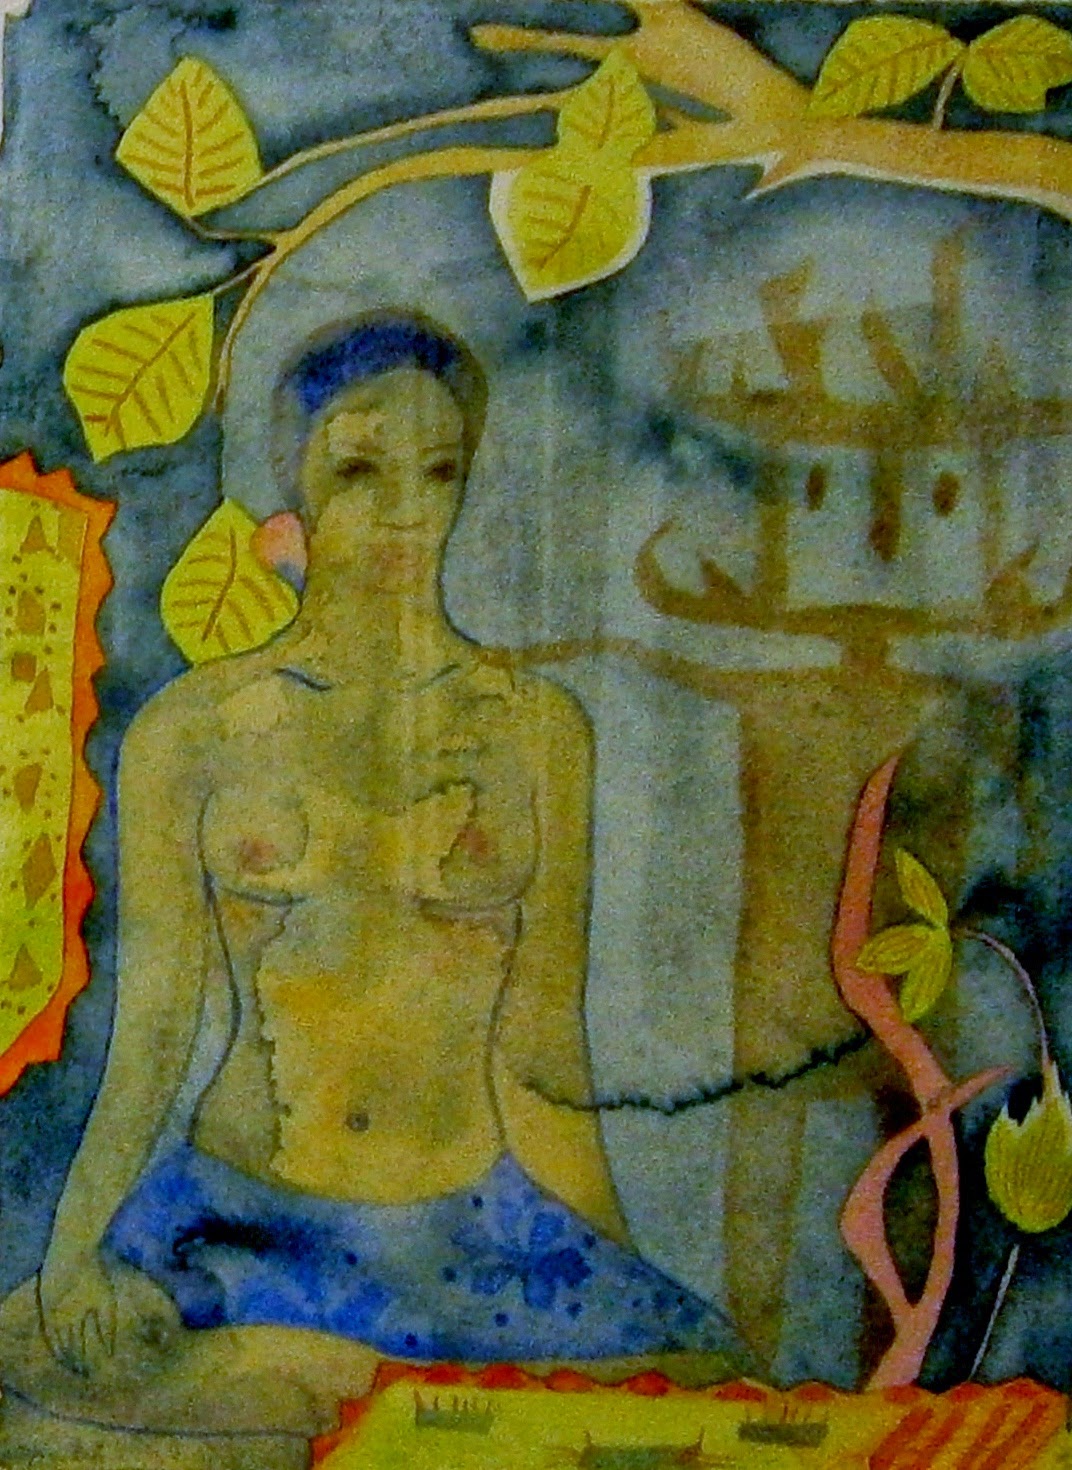 τα έργα της Παπουλίδου Γκαλίνας στην Gallery 512 της Πτολεμαΐδας